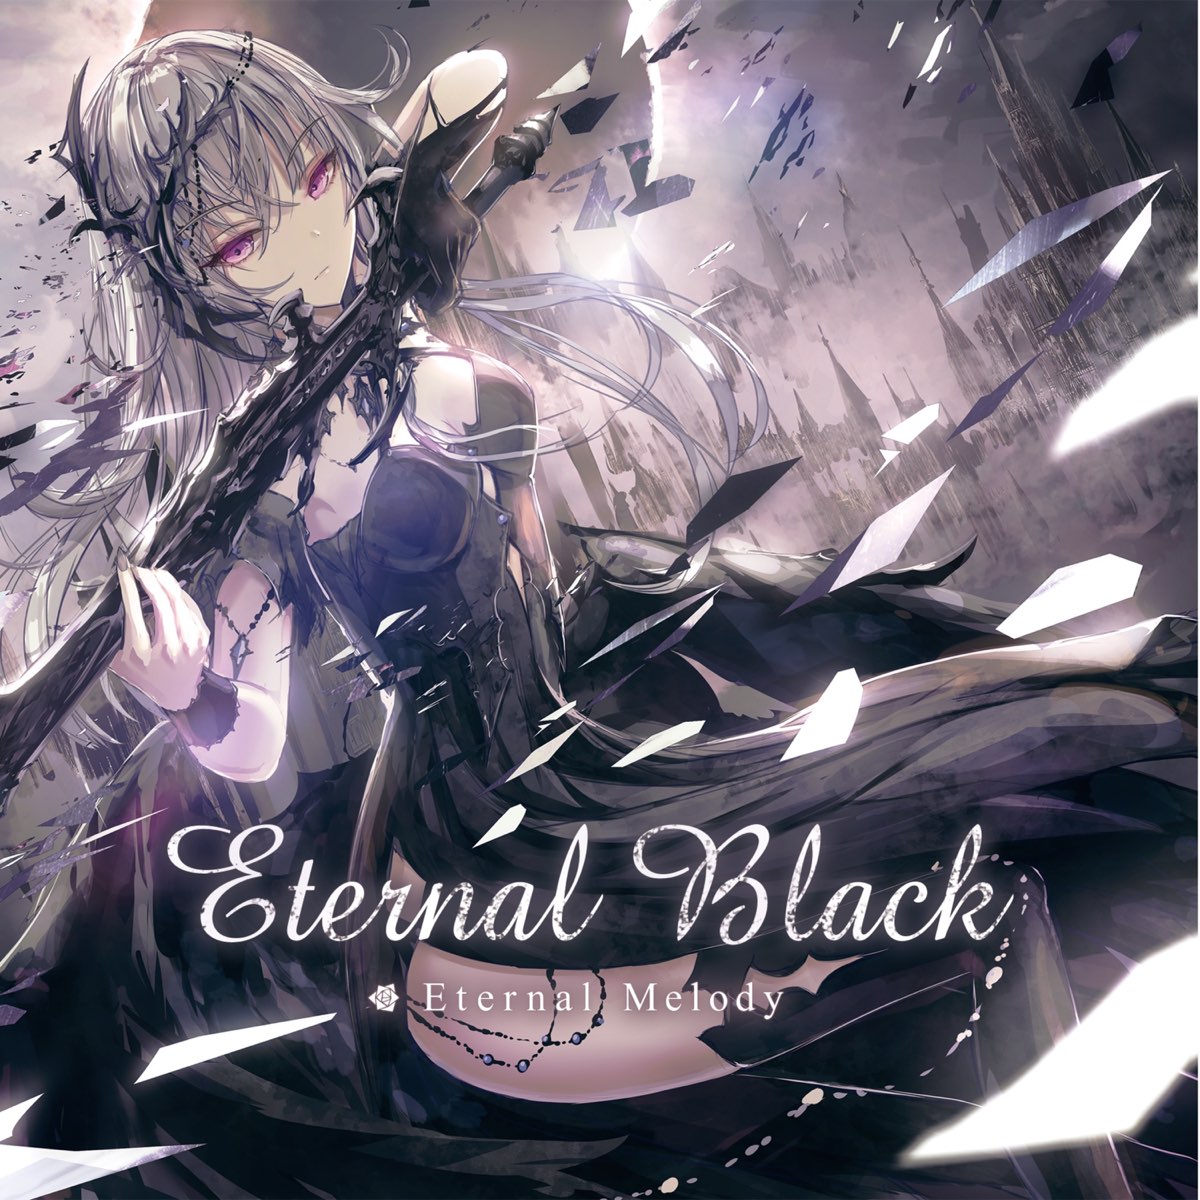 Eternal eternal album. Eternal Melody. Eternal Теги. Eternal Melody 06.